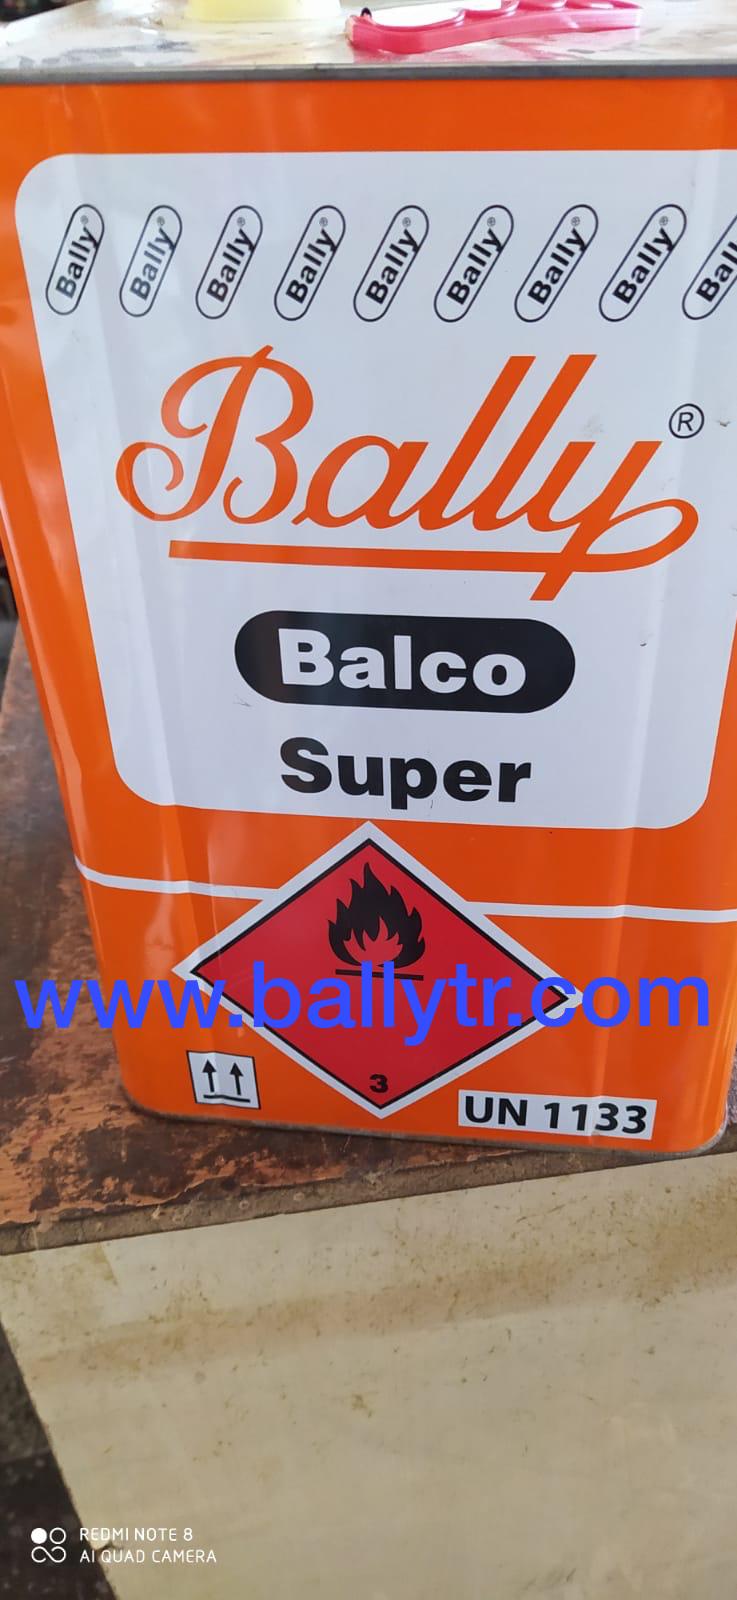 Лицензированный в Швейцарии клей Bally Balco с 1932 года. в Швейцарии клей Bally Balco с 1932 года.